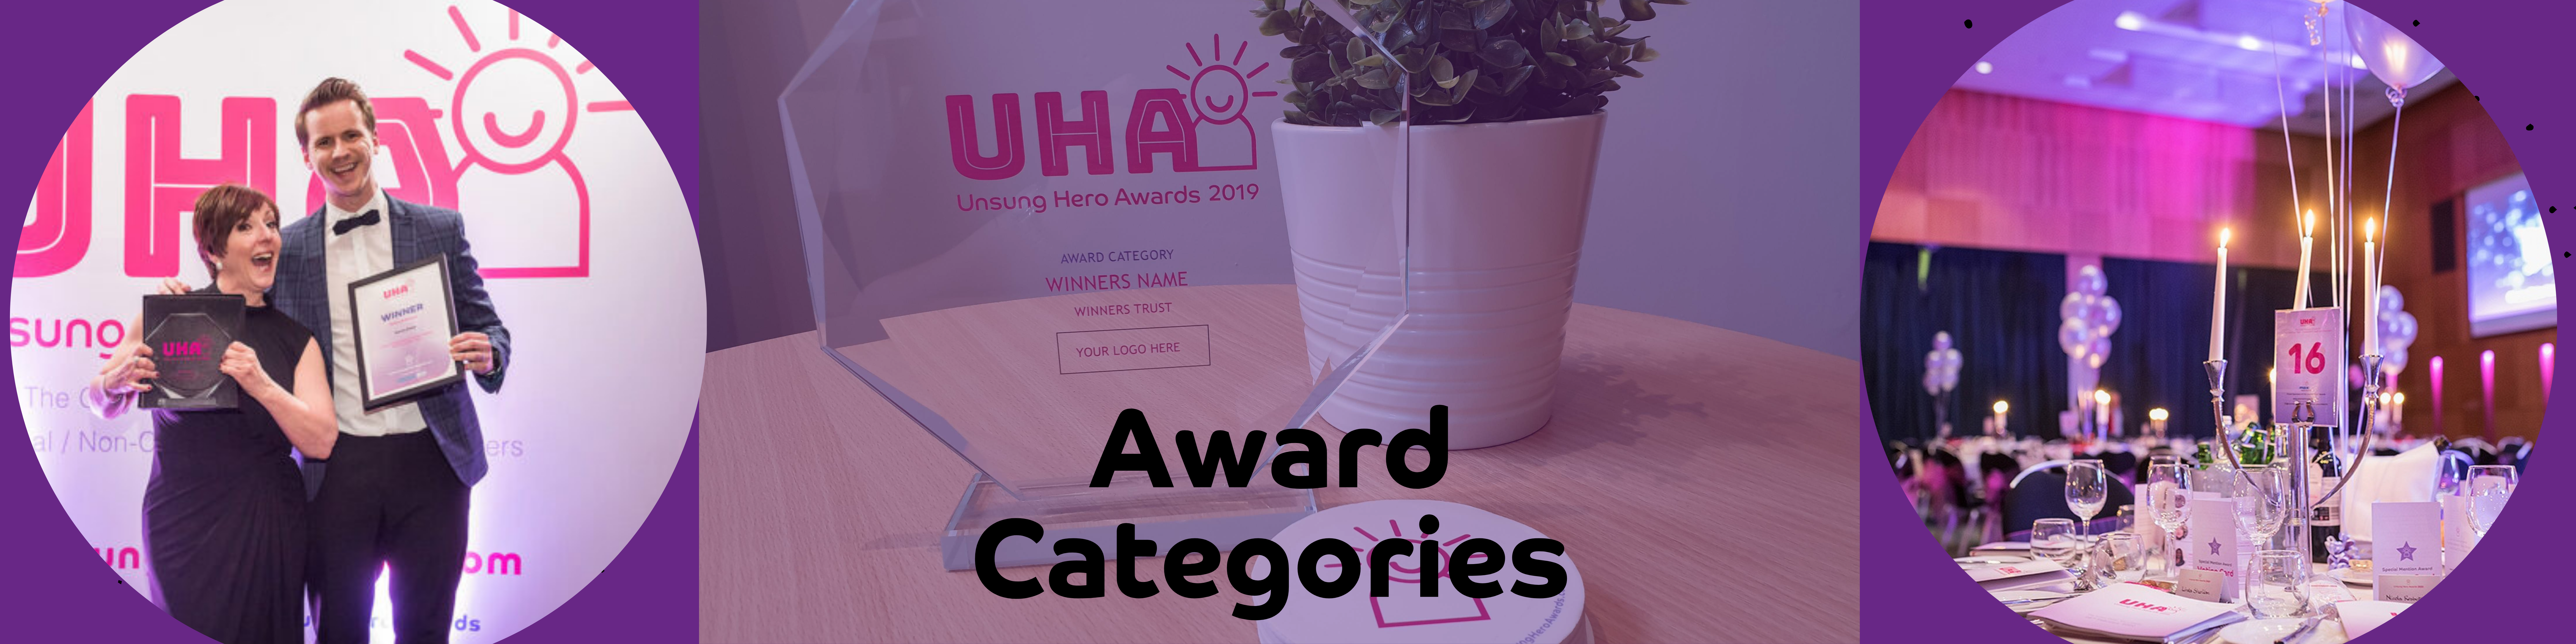 Award Categories | Unsung Hero Awards